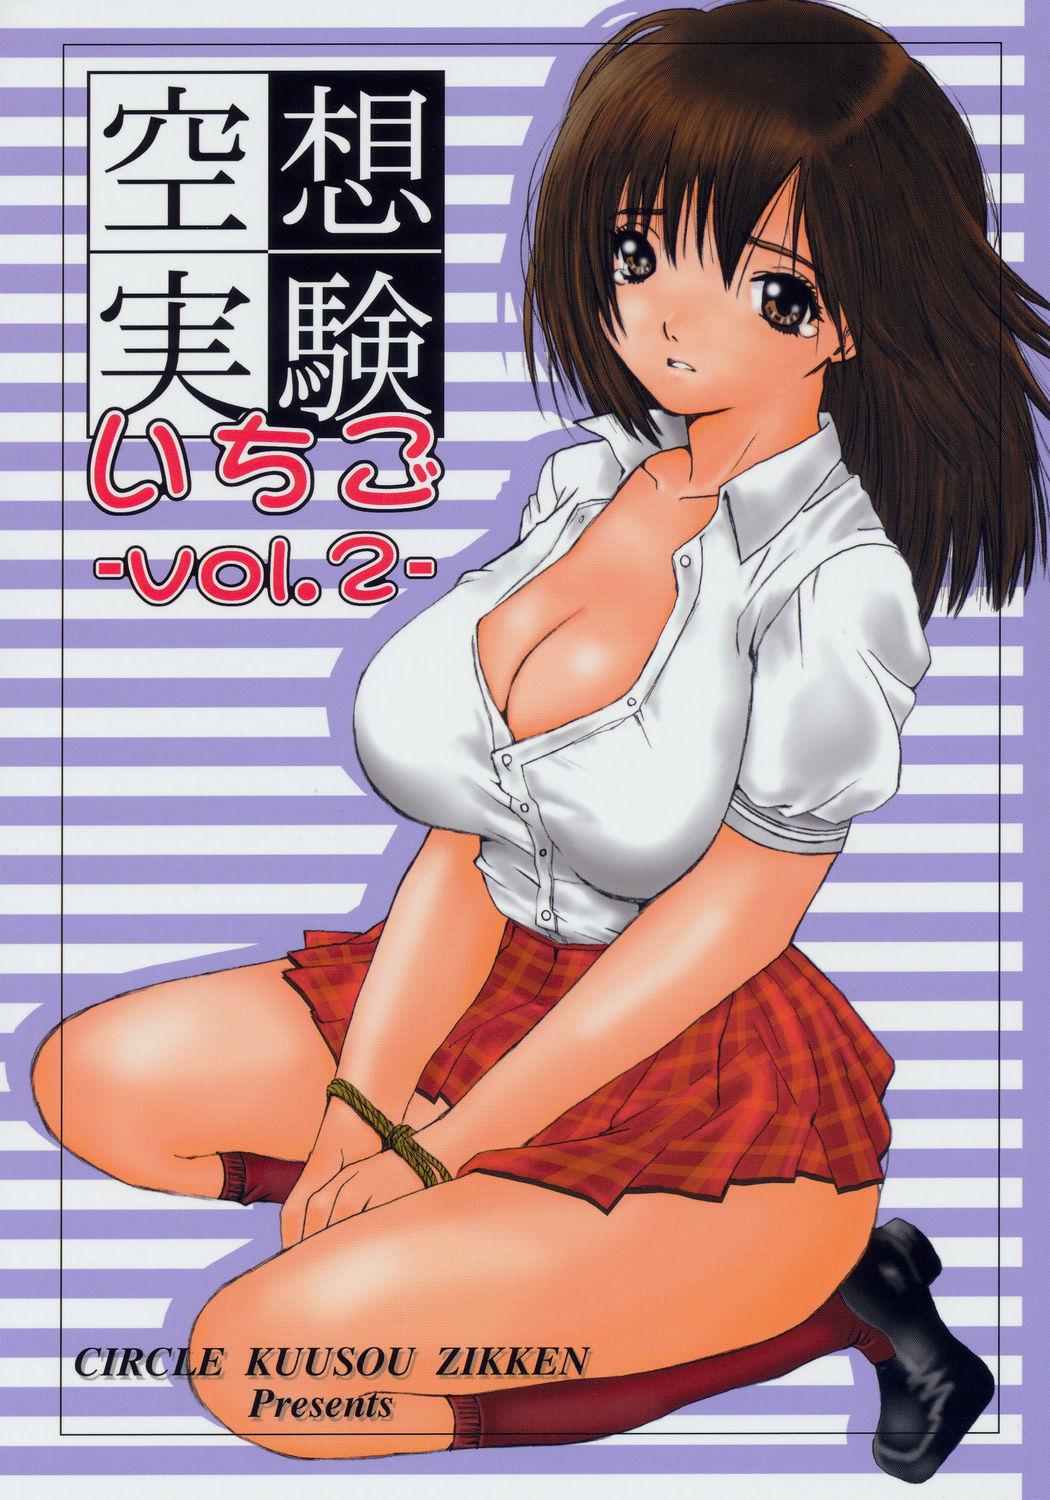 Erotic Kuusou Zikken Ichigo Vol.2 - Ichigo 100 Lesbian Porn - Picture 1